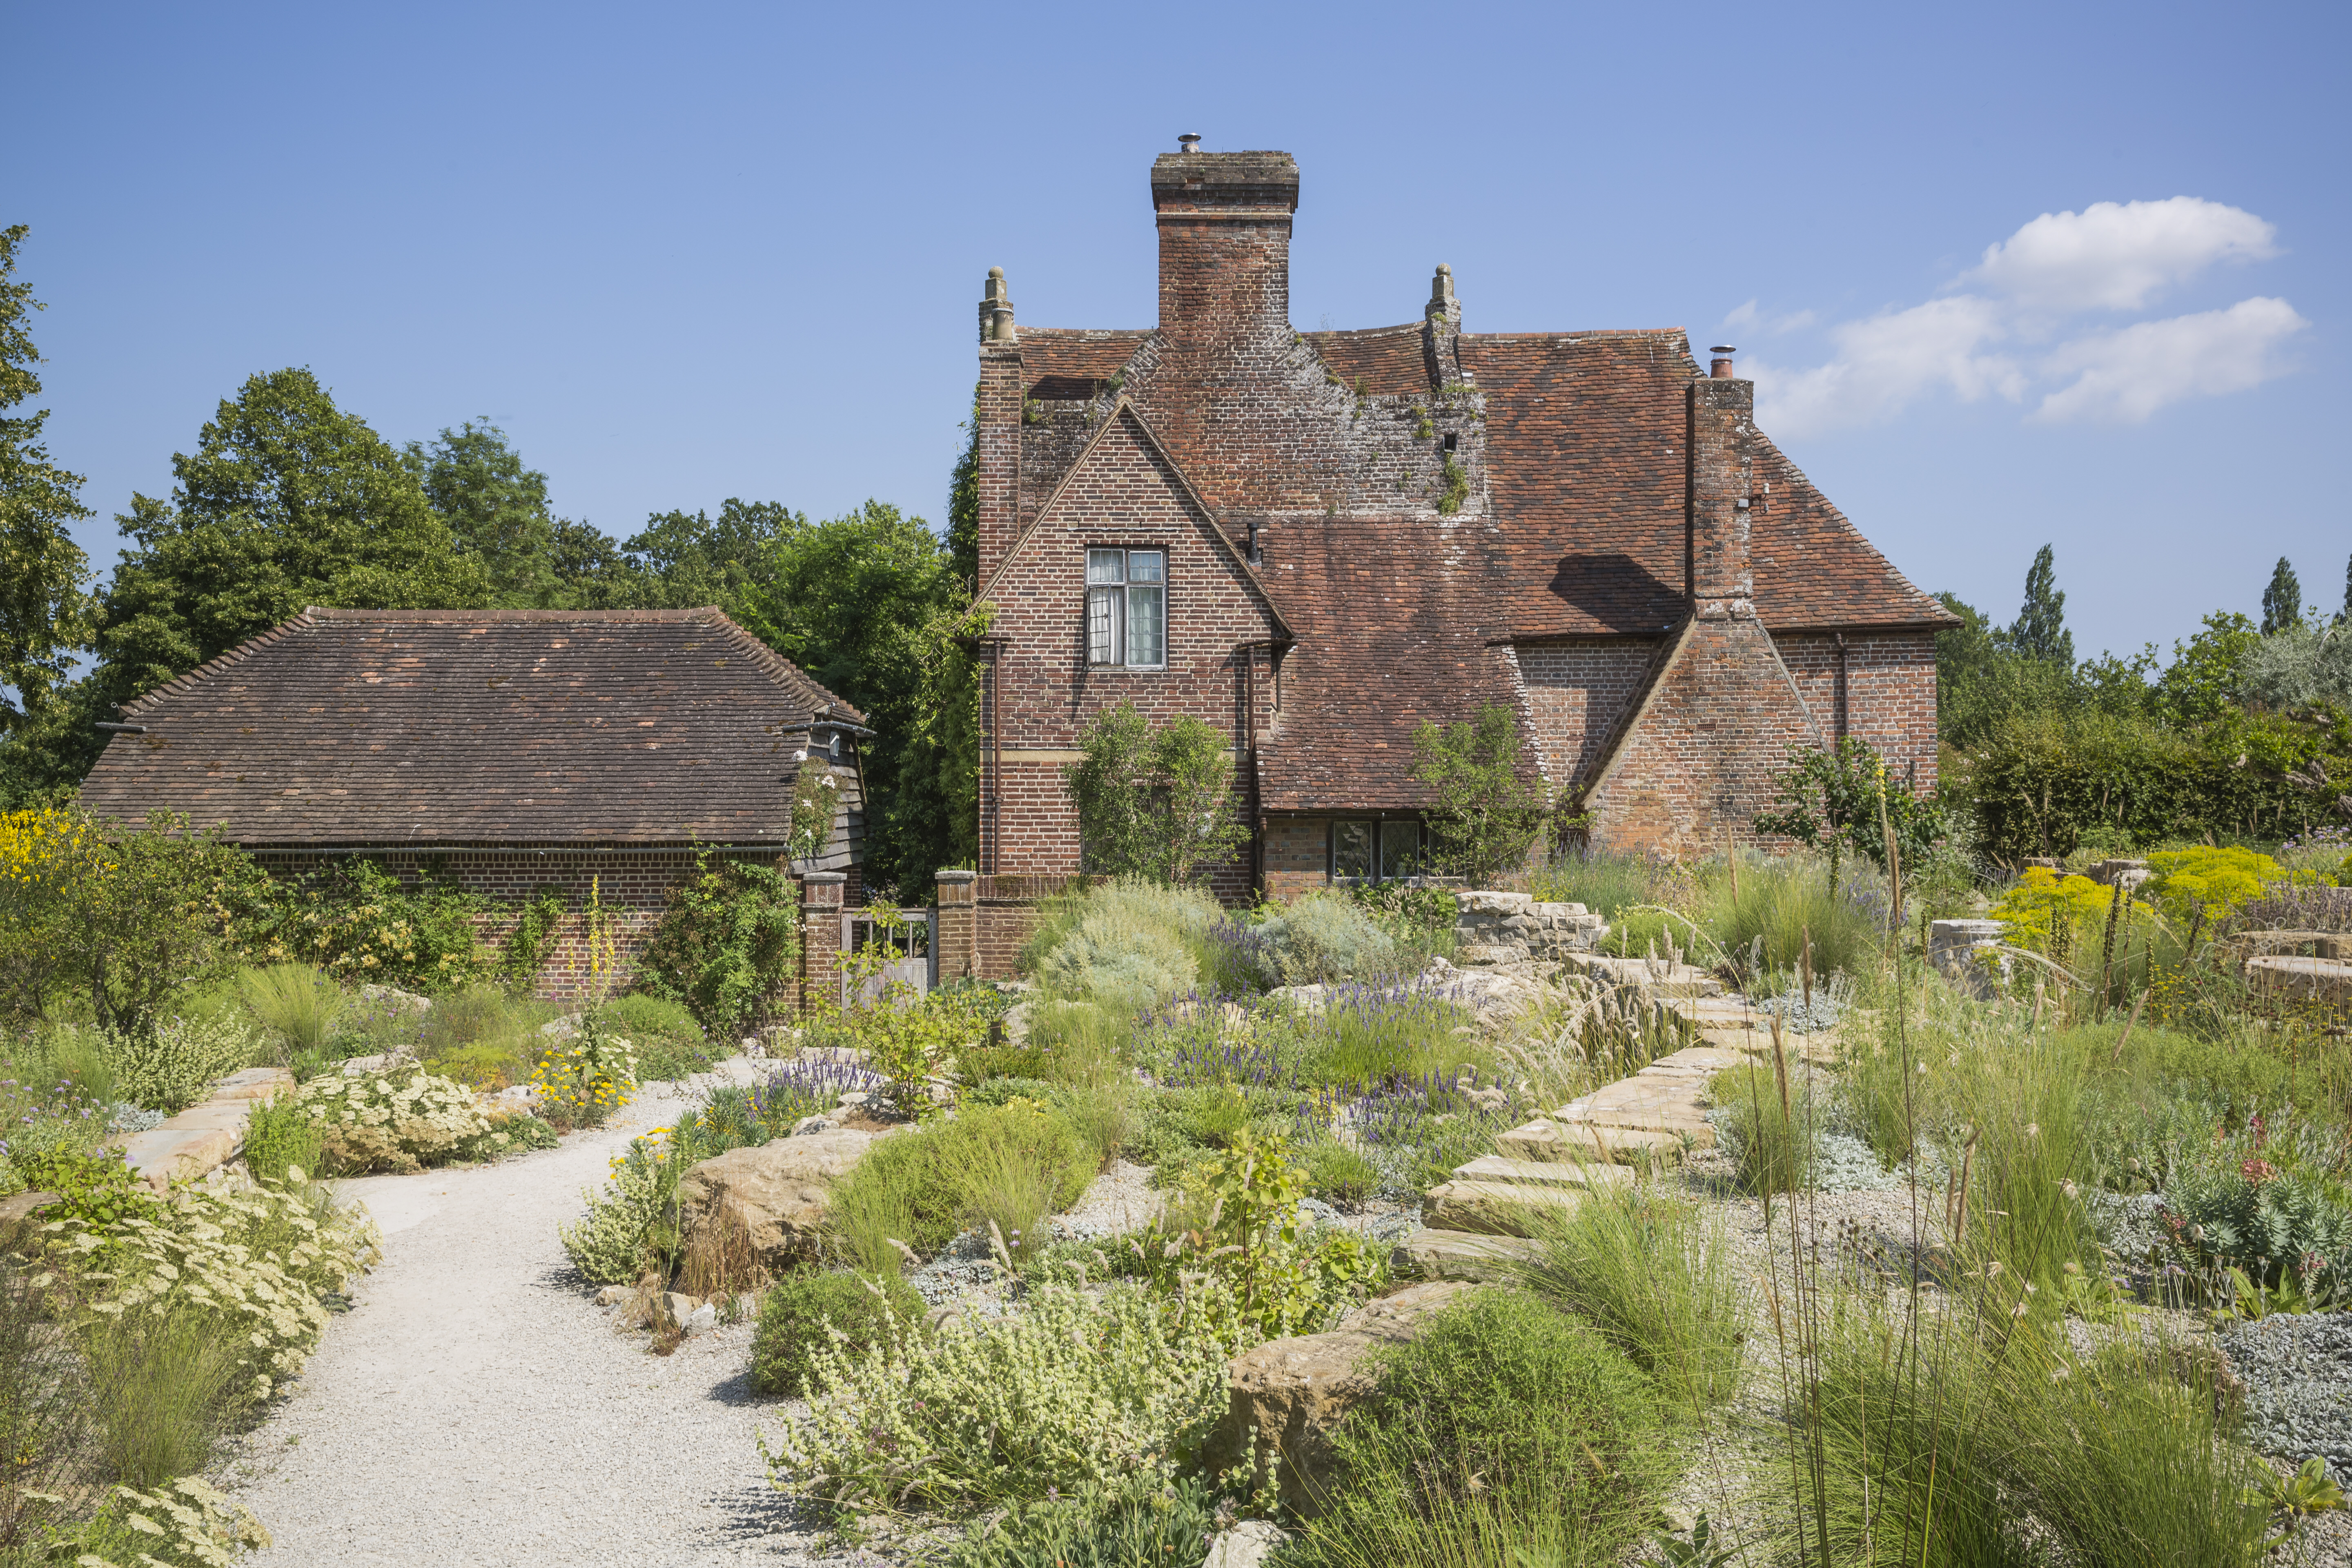 The Delos garden at Sissinghurst Castle Garden, Kent,